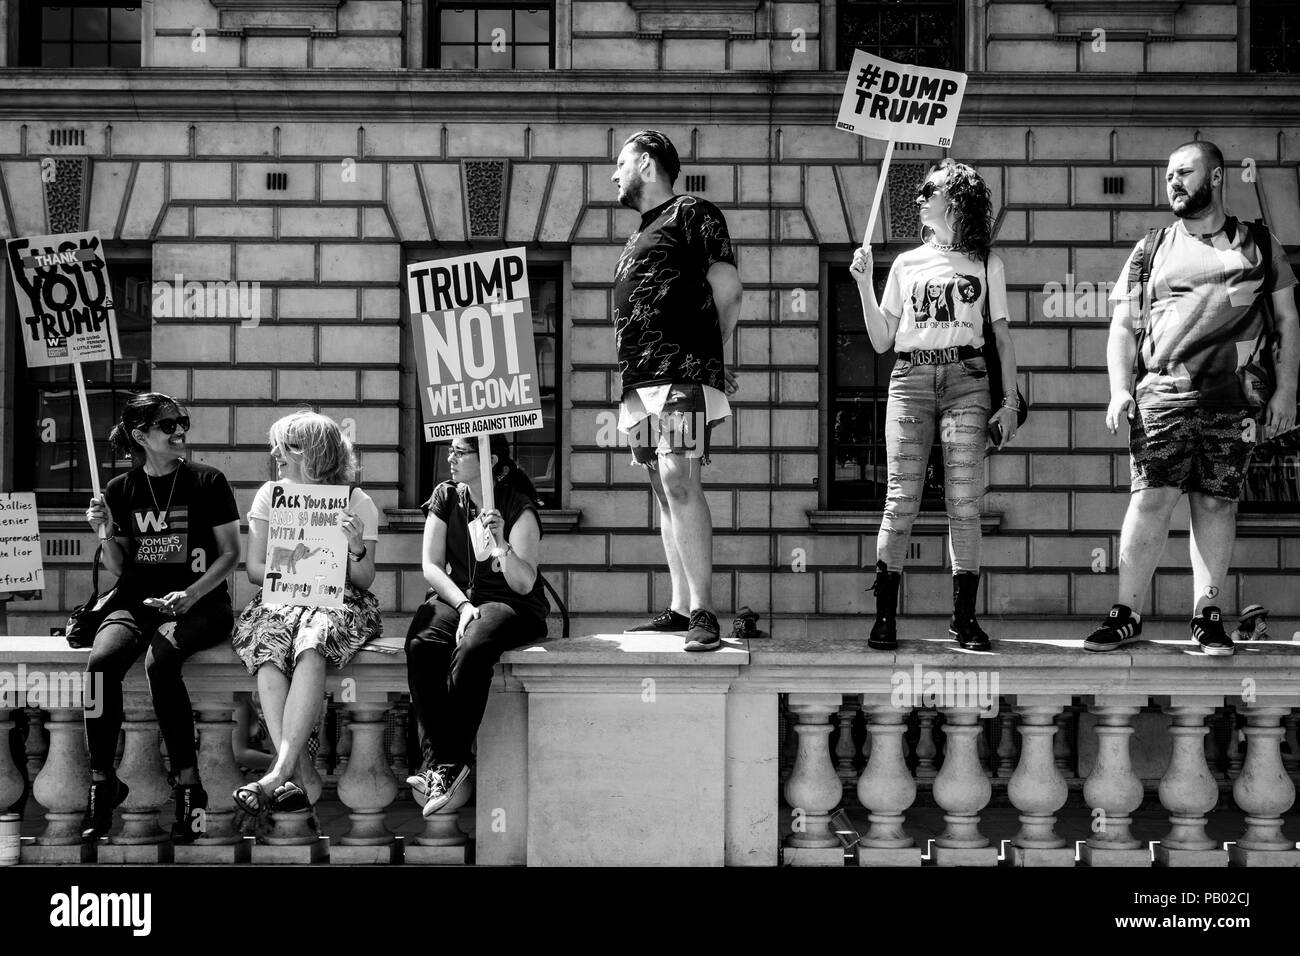 Les manifestants protestaient contre l'emporter sur la visite au Royaume-Uni du président américain Donald Trump, Whitehall, Londres, Angleterre Banque D'Images